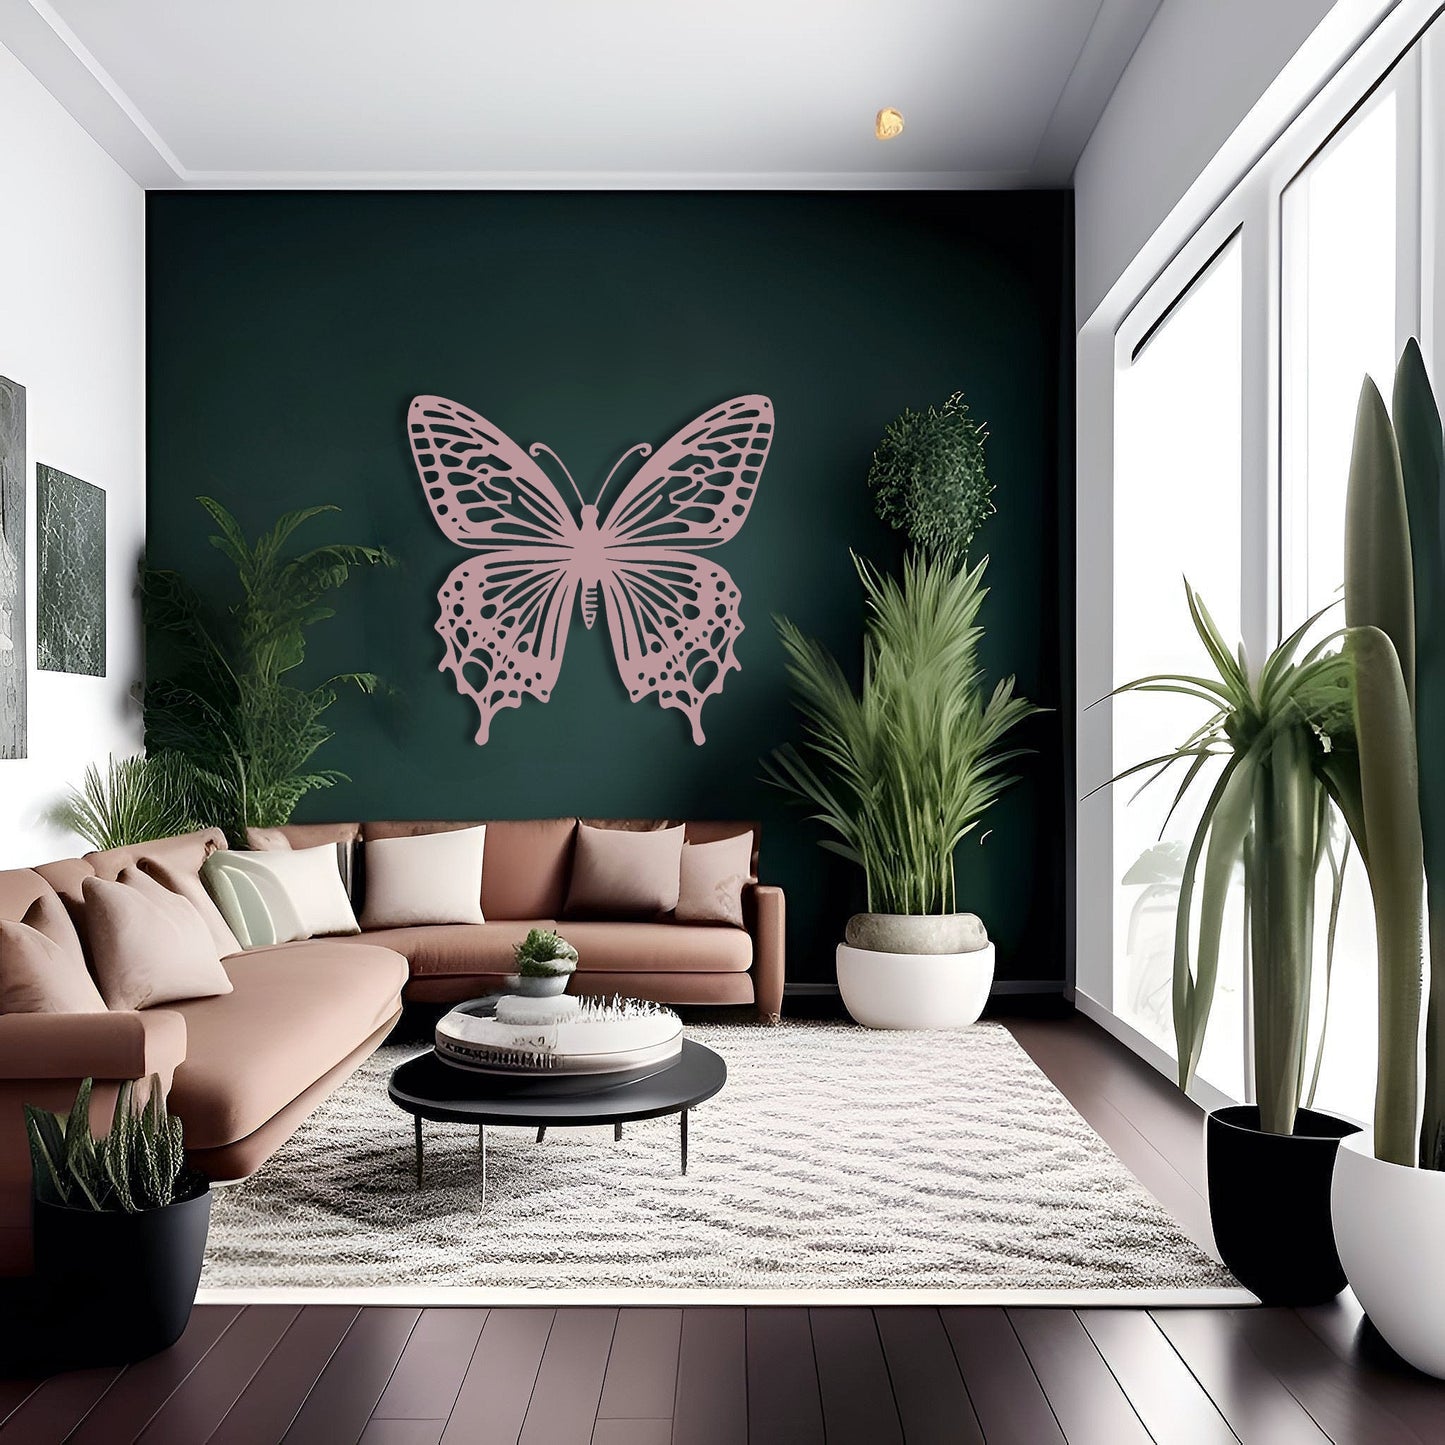 Mystical Wings Butterfly Metal Wall Art